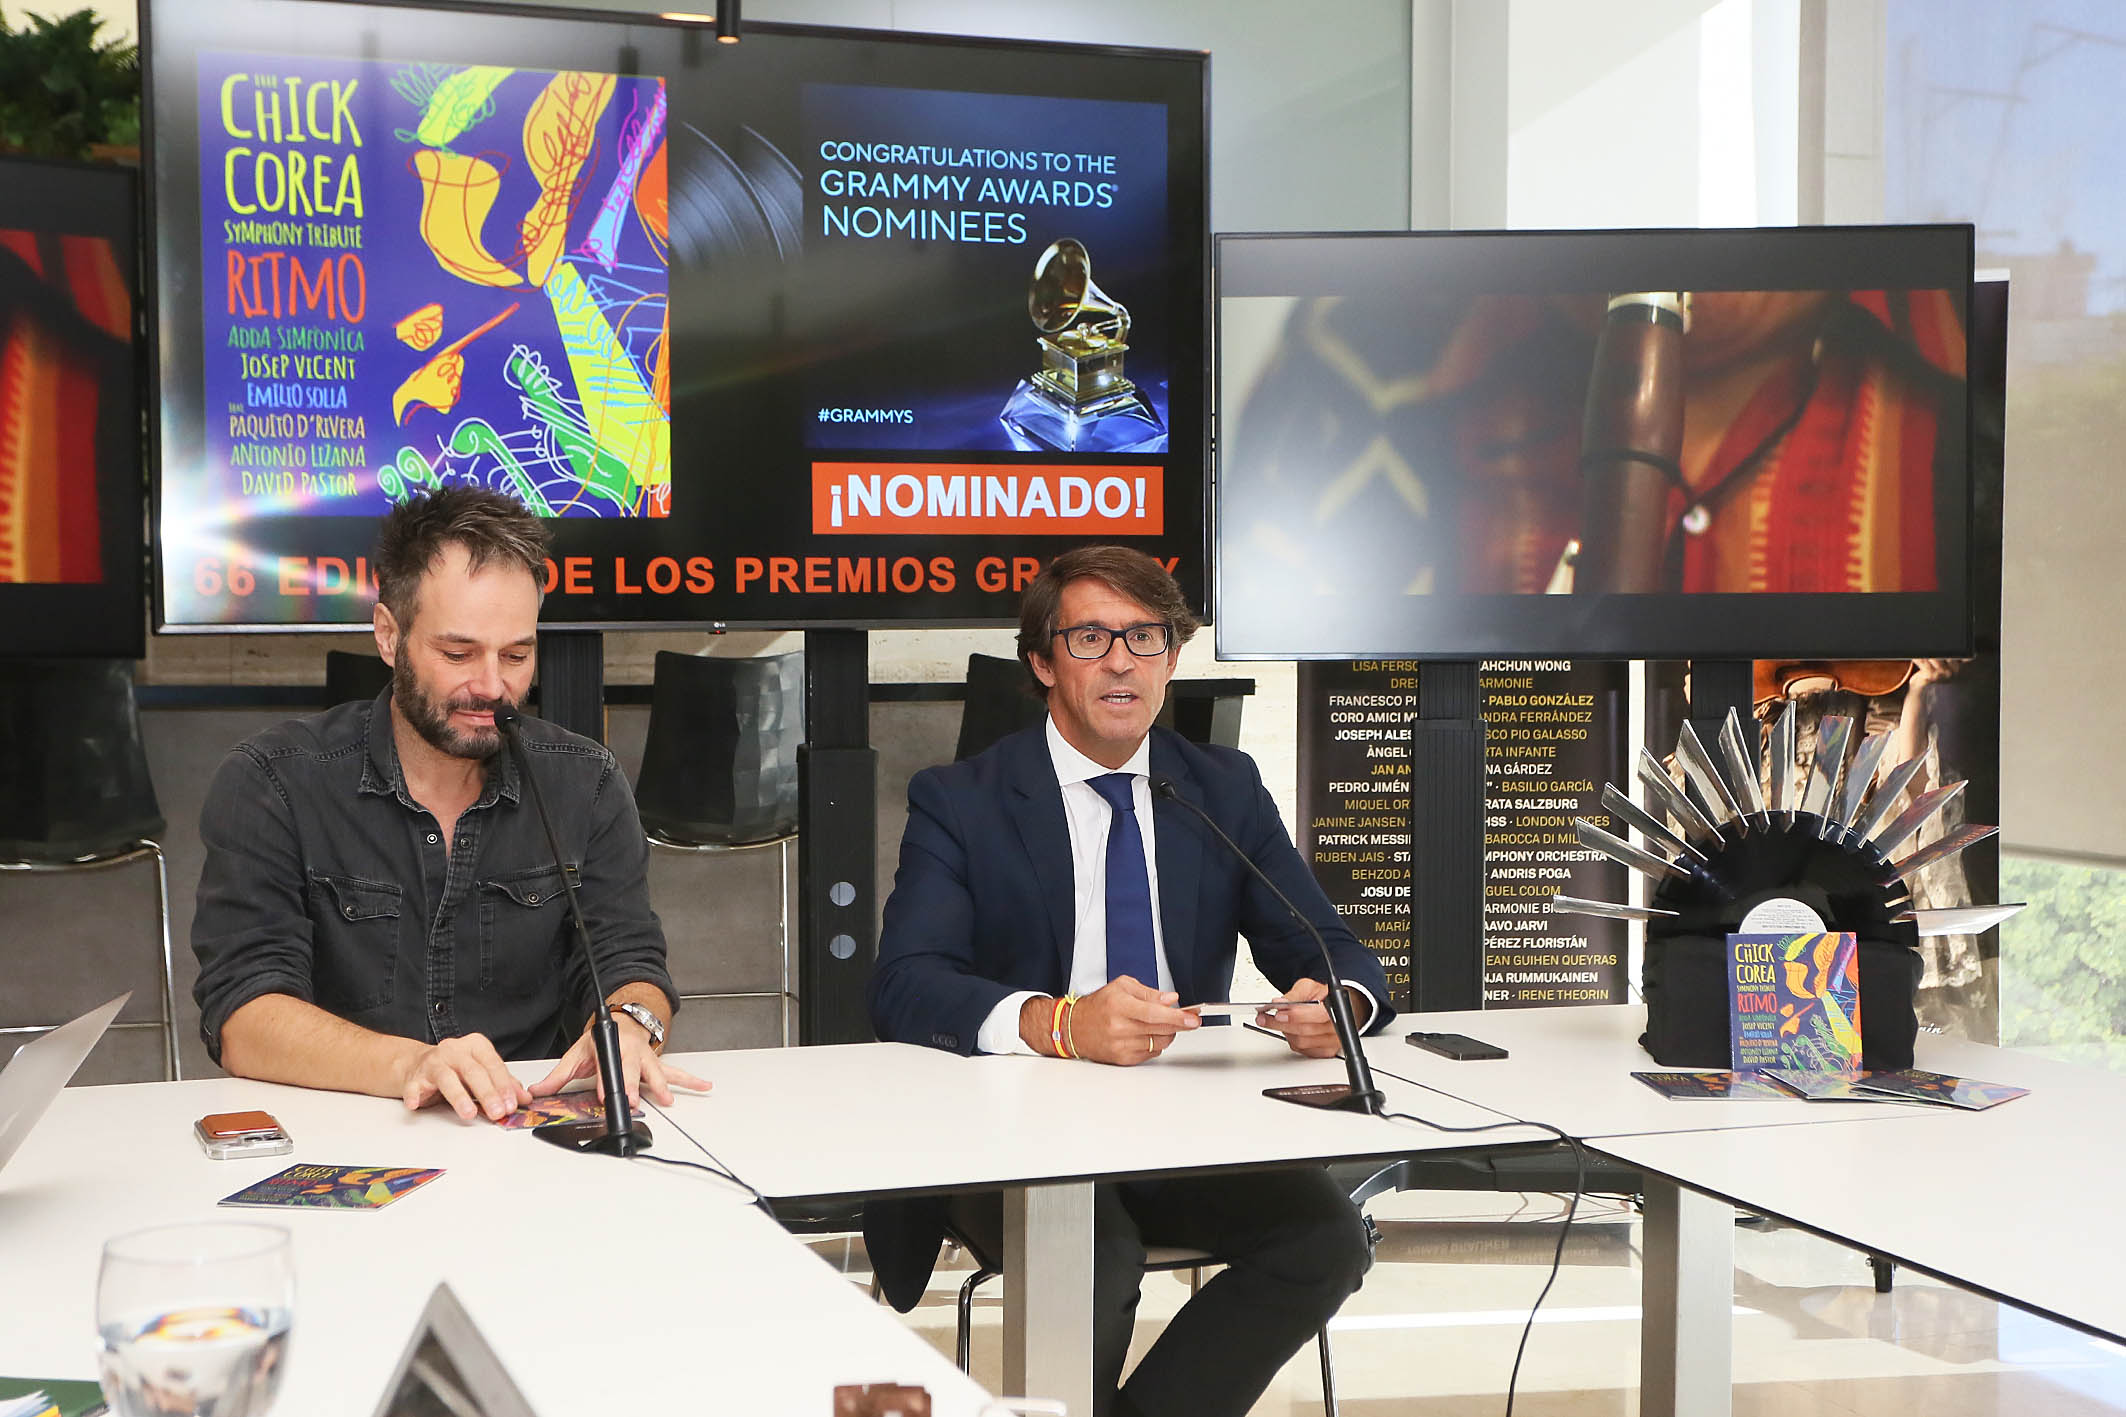 La Diputación celebra el ‘doblete’ de ADDA·Simfònica, nominada este año a los Grammy latinos y americanos